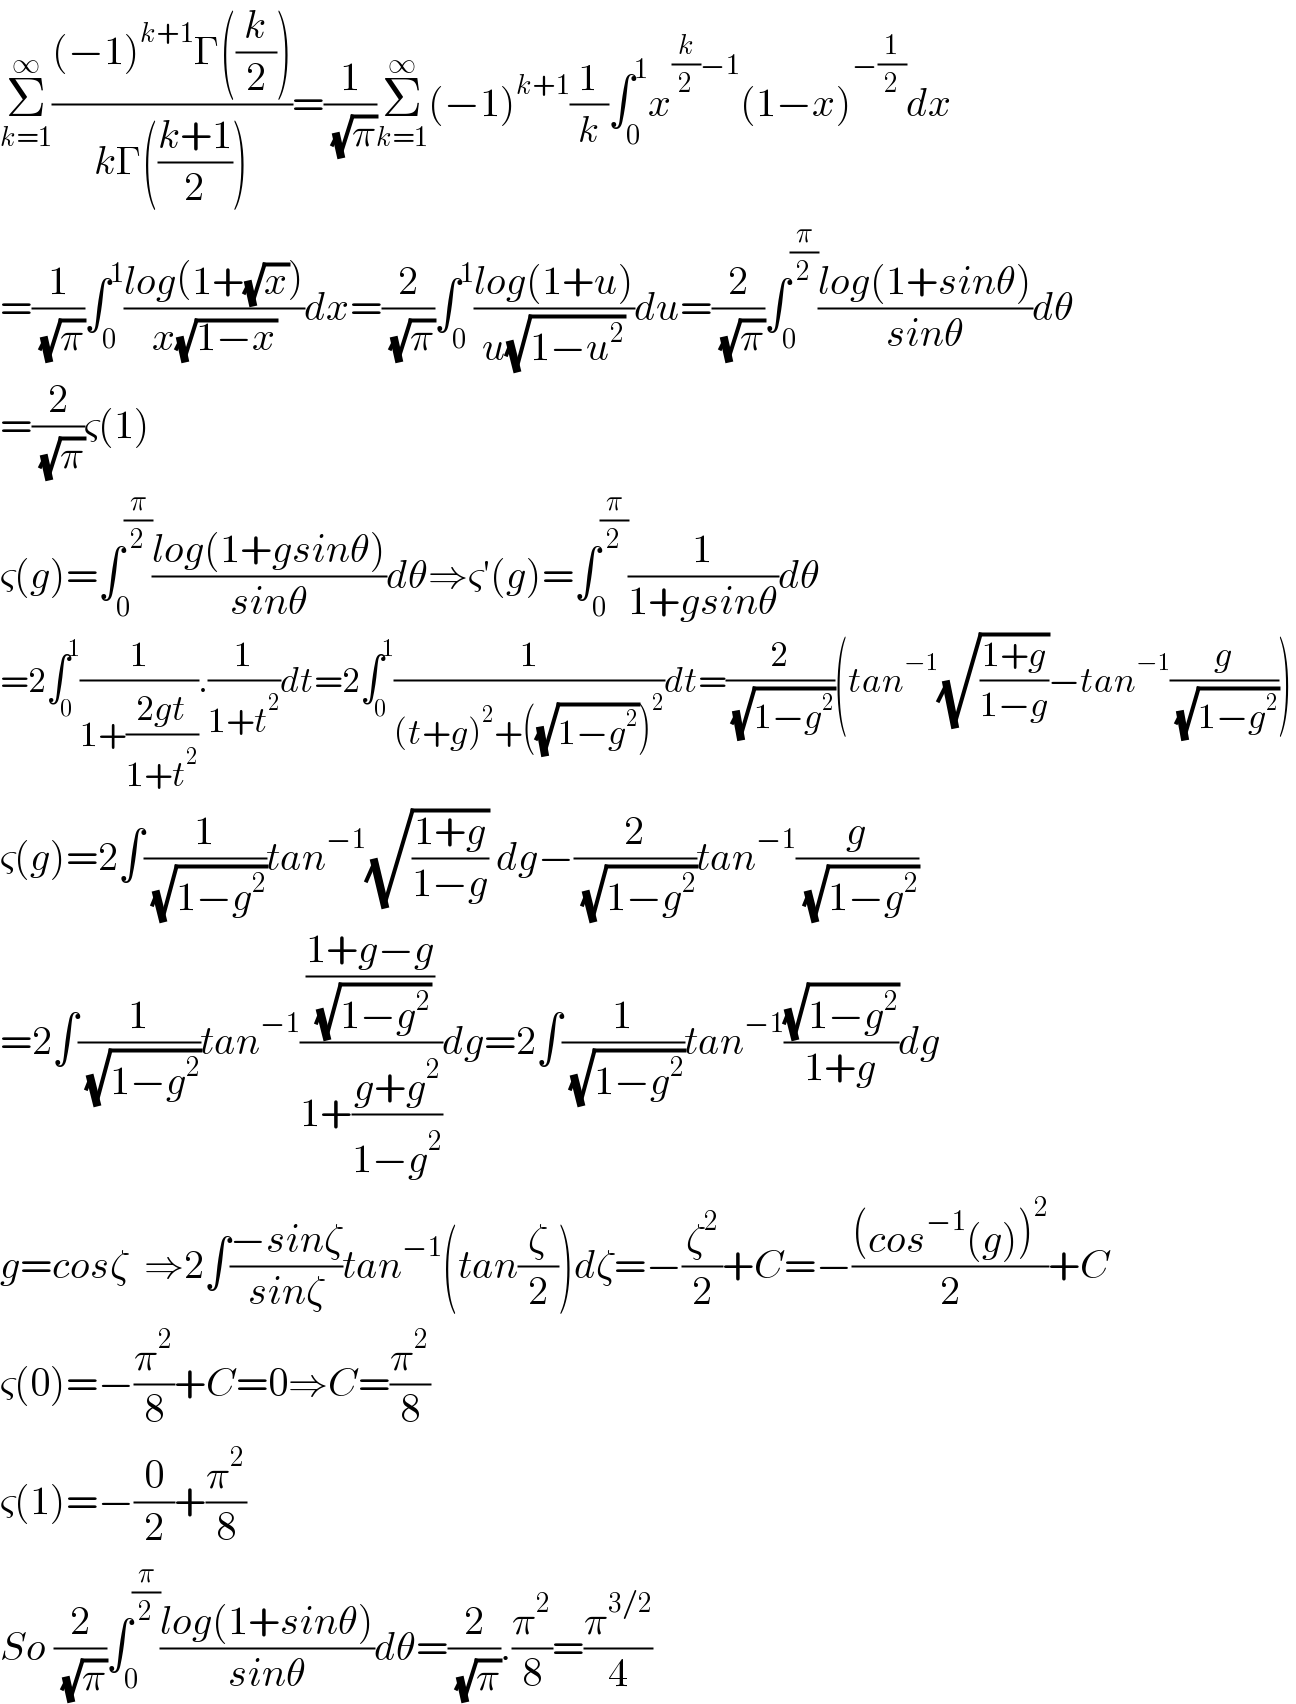 Σ_(k=1) ^∞ (((−1)^(k+1) Γ((k/2)))/(kΓ(((k+1)/2))))=(1/( (√π)))Σ_(k=1) ^∞ (−1)^(k+1) (1/k)∫_0 ^1 x^((k/2)−1) (1−x)^(−(1/2)) dx  =(1/( (√π)))∫_0 ^1 ((log(1+(√x)))/(x(√(1−x))))dx=(2/( (√π)))∫_0 ^1 ((log(1+u))/(u(√(1−u^2 ))))du=(2/( (√π)))∫_0 ^(π/2) ((log(1+sinθ))/(sinθ))dθ  =(2/( (√π)))ς(1)  ς(g)=∫_0 ^(π/2) ((log(1+gsinθ))/(sinθ))dθ⇒ς′(g)=∫_0 ^(π/2) (1/(1+gsinθ))dθ  =2∫_0 ^1 (1/(1+((2gt)/(1+t^2 )))).(1/(1+t^2 ))dt=2∫_0 ^1 (1/((t+g)^2 +((√(1−g^2 )))^2 ))dt=(2/( (√(1−g^2 ))))(tan^(−1) (√((1+g)/(1−g)))−tan^(−1) (g/( (√(1−g^2 )))))  ς(g)=2∫(1/( (√(1−g^2 ))))tan^(−1) (√((1+g)/(1−g))) dg−(2/( (√(1−g^2 ))))tan^(−1) (g/( (√(1−g^2 ))))  =2∫(1/( (√(1−g^2 ))))tan^(−1) (((1+g−g)/( (√(1−g^2 ))))/(1+((g+g^2 )/(1−g^2 ))))dg=2∫(1/( (√(1−g^2 ))))tan^(−1) ((√(1−g^2 ))/(1+g))dg  g=cosζ  ⇒2∫((−sinζ)/(sinζ))tan^(−1) (tan(ζ/2))dζ=−(ζ^2 /2)+C=−(((cos^(−1) (g))^2 )/2)+C  ς(0)=−(π^2 /8)+C=0⇒C=(π^2 /8)  ς(1)=−(0/2)+(π^2 /8)  So (2/( (√π)))∫_0 ^(π/2) ((log(1+sinθ))/(sinθ))dθ=(2/( (√π))).(π^2 /8)=(π^(3/2) /4)  